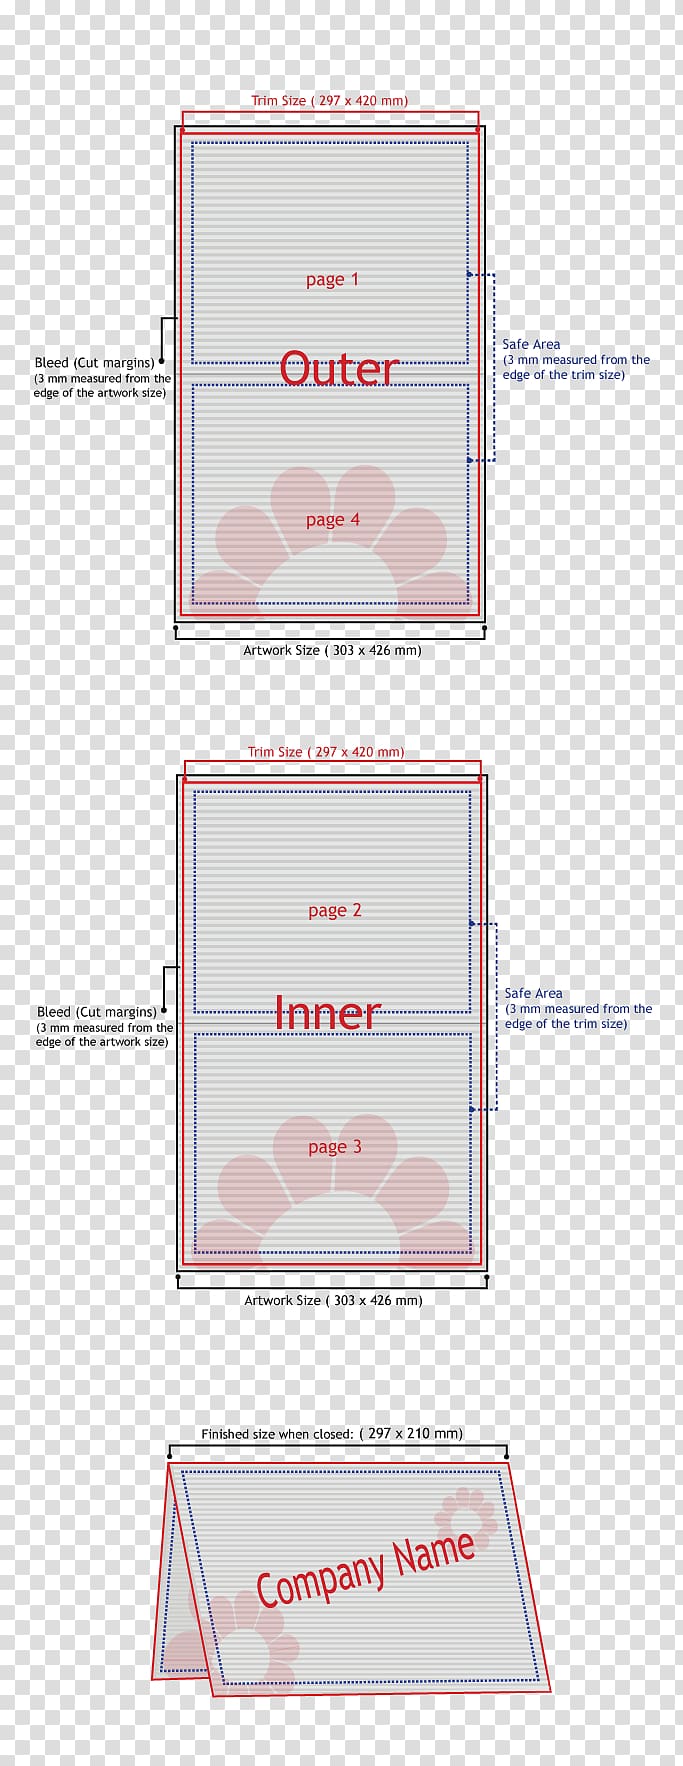 Paper Brand Font, folding leaflets transparent background PNG clipart